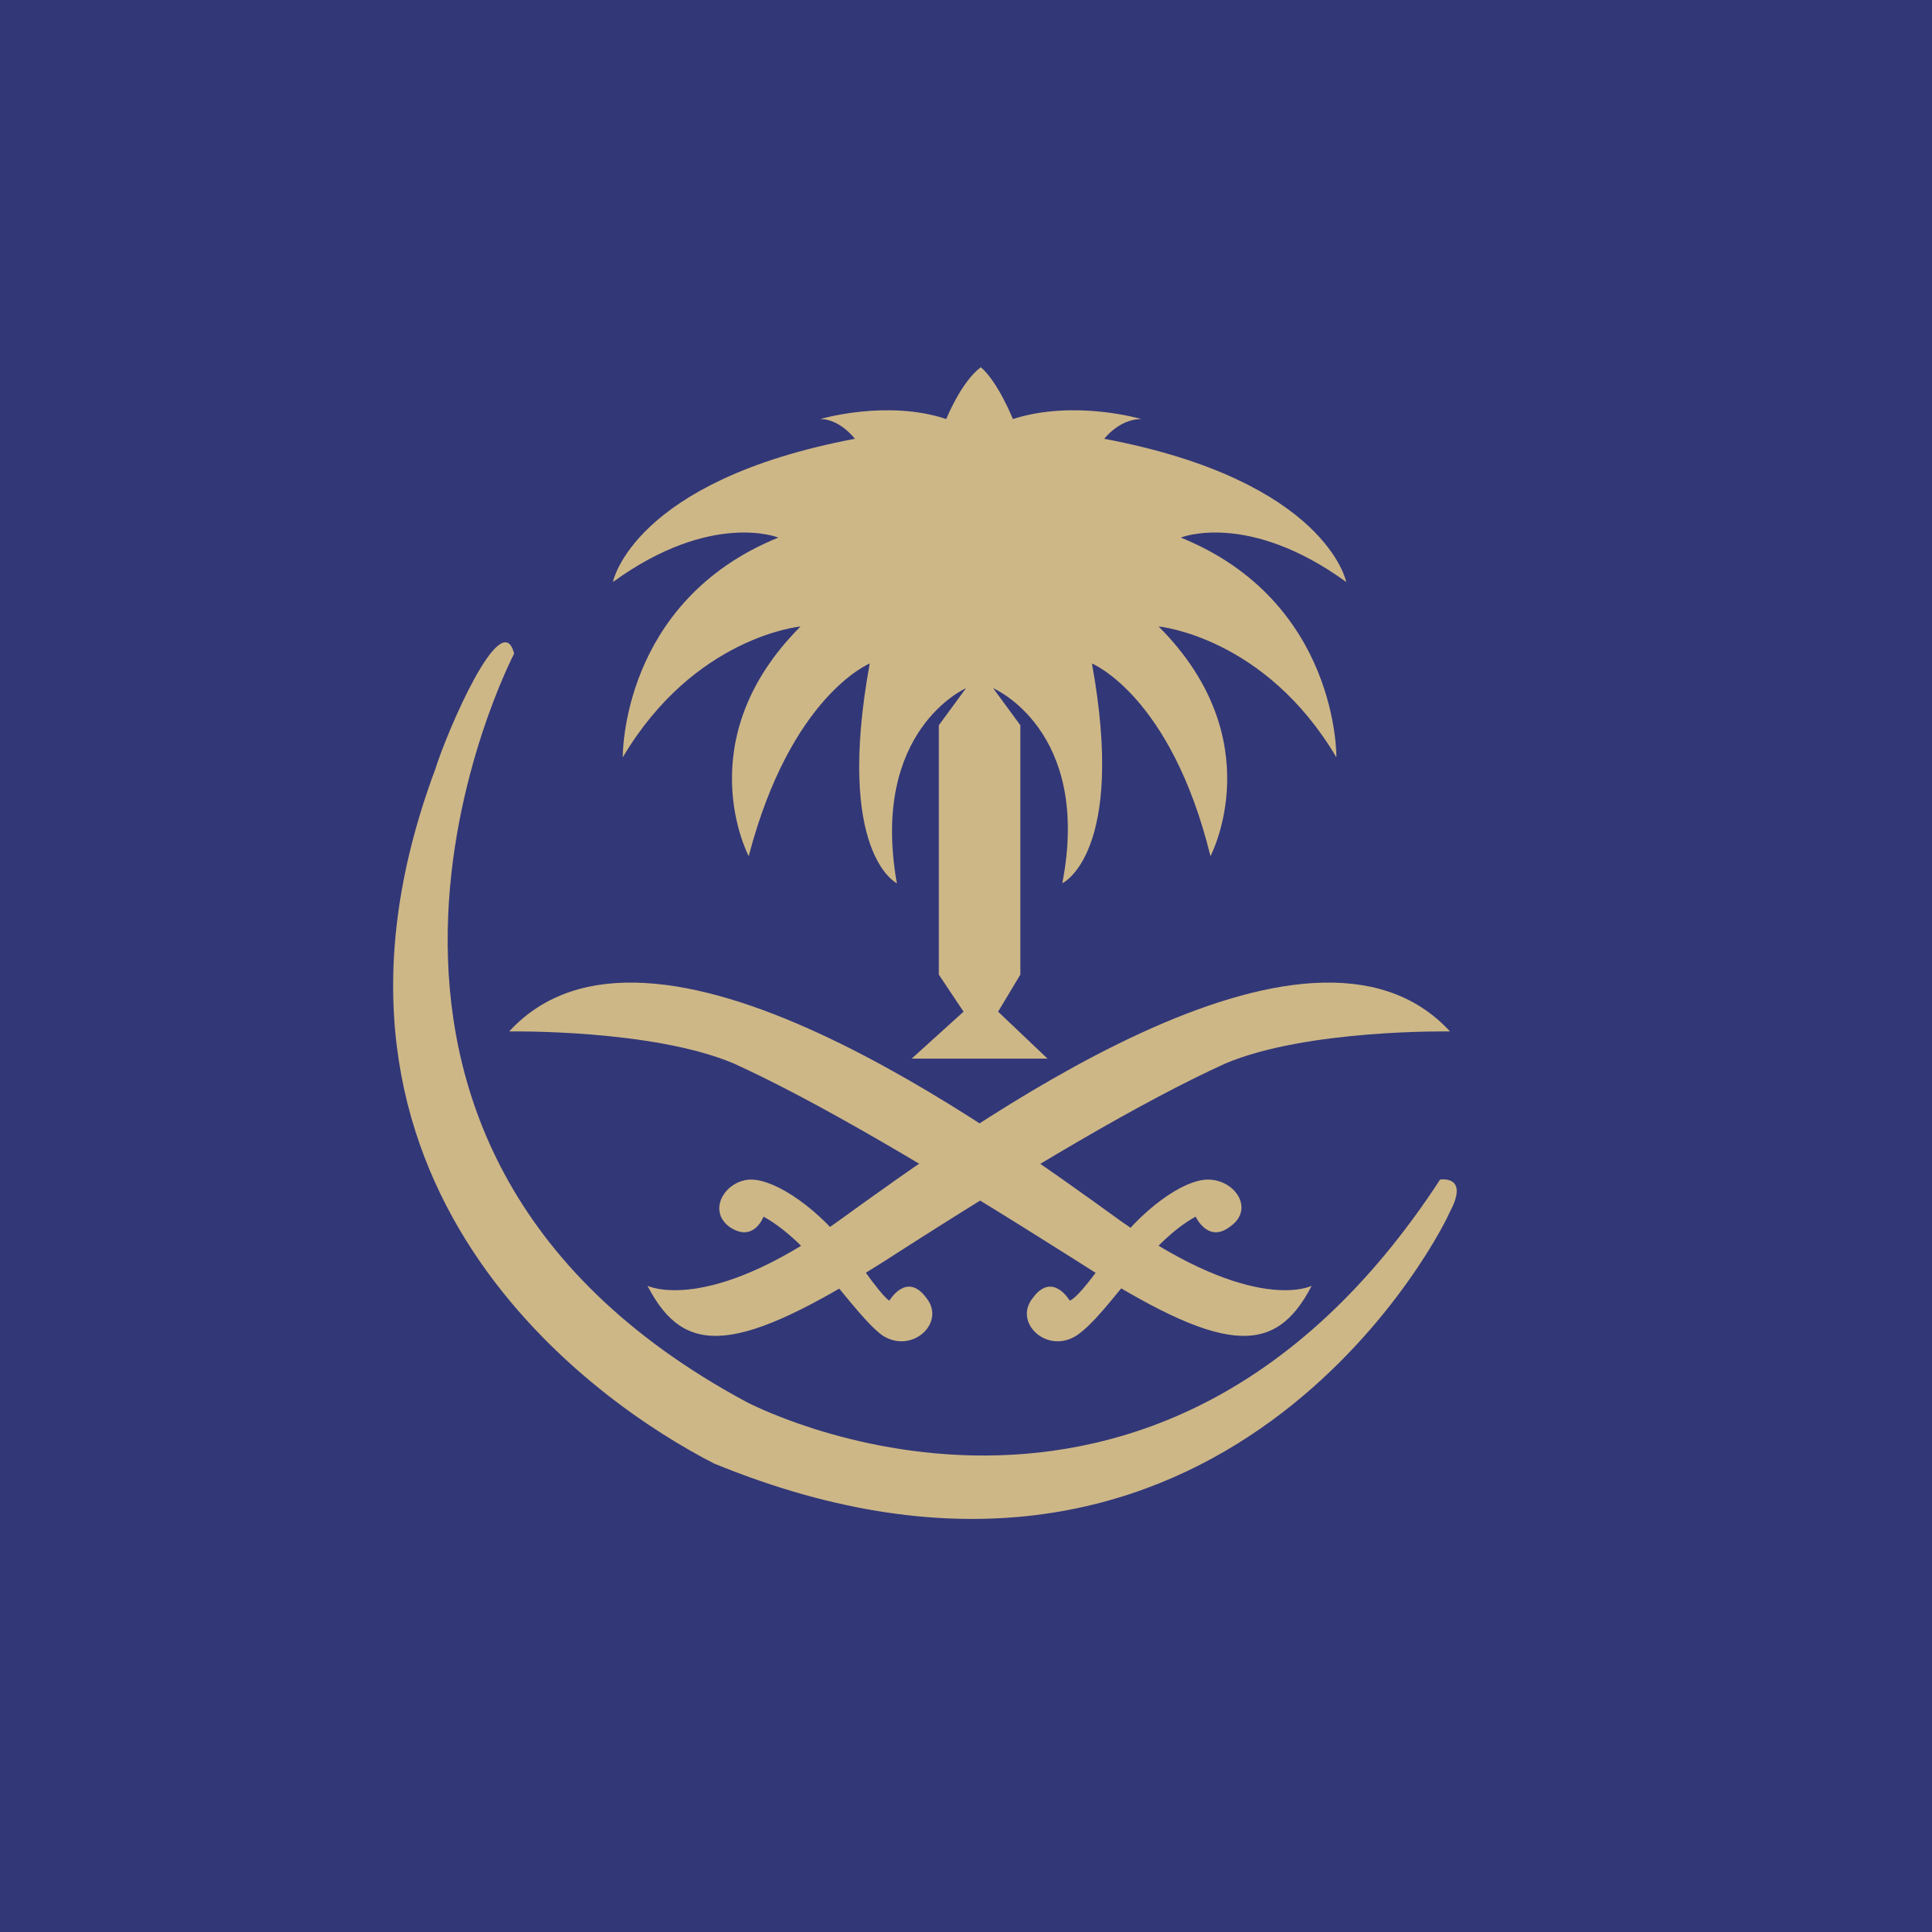 Saudi Logo - Saudi Arabian Airlines Logo PNG Transparent & SVG Vector - Freebie ...